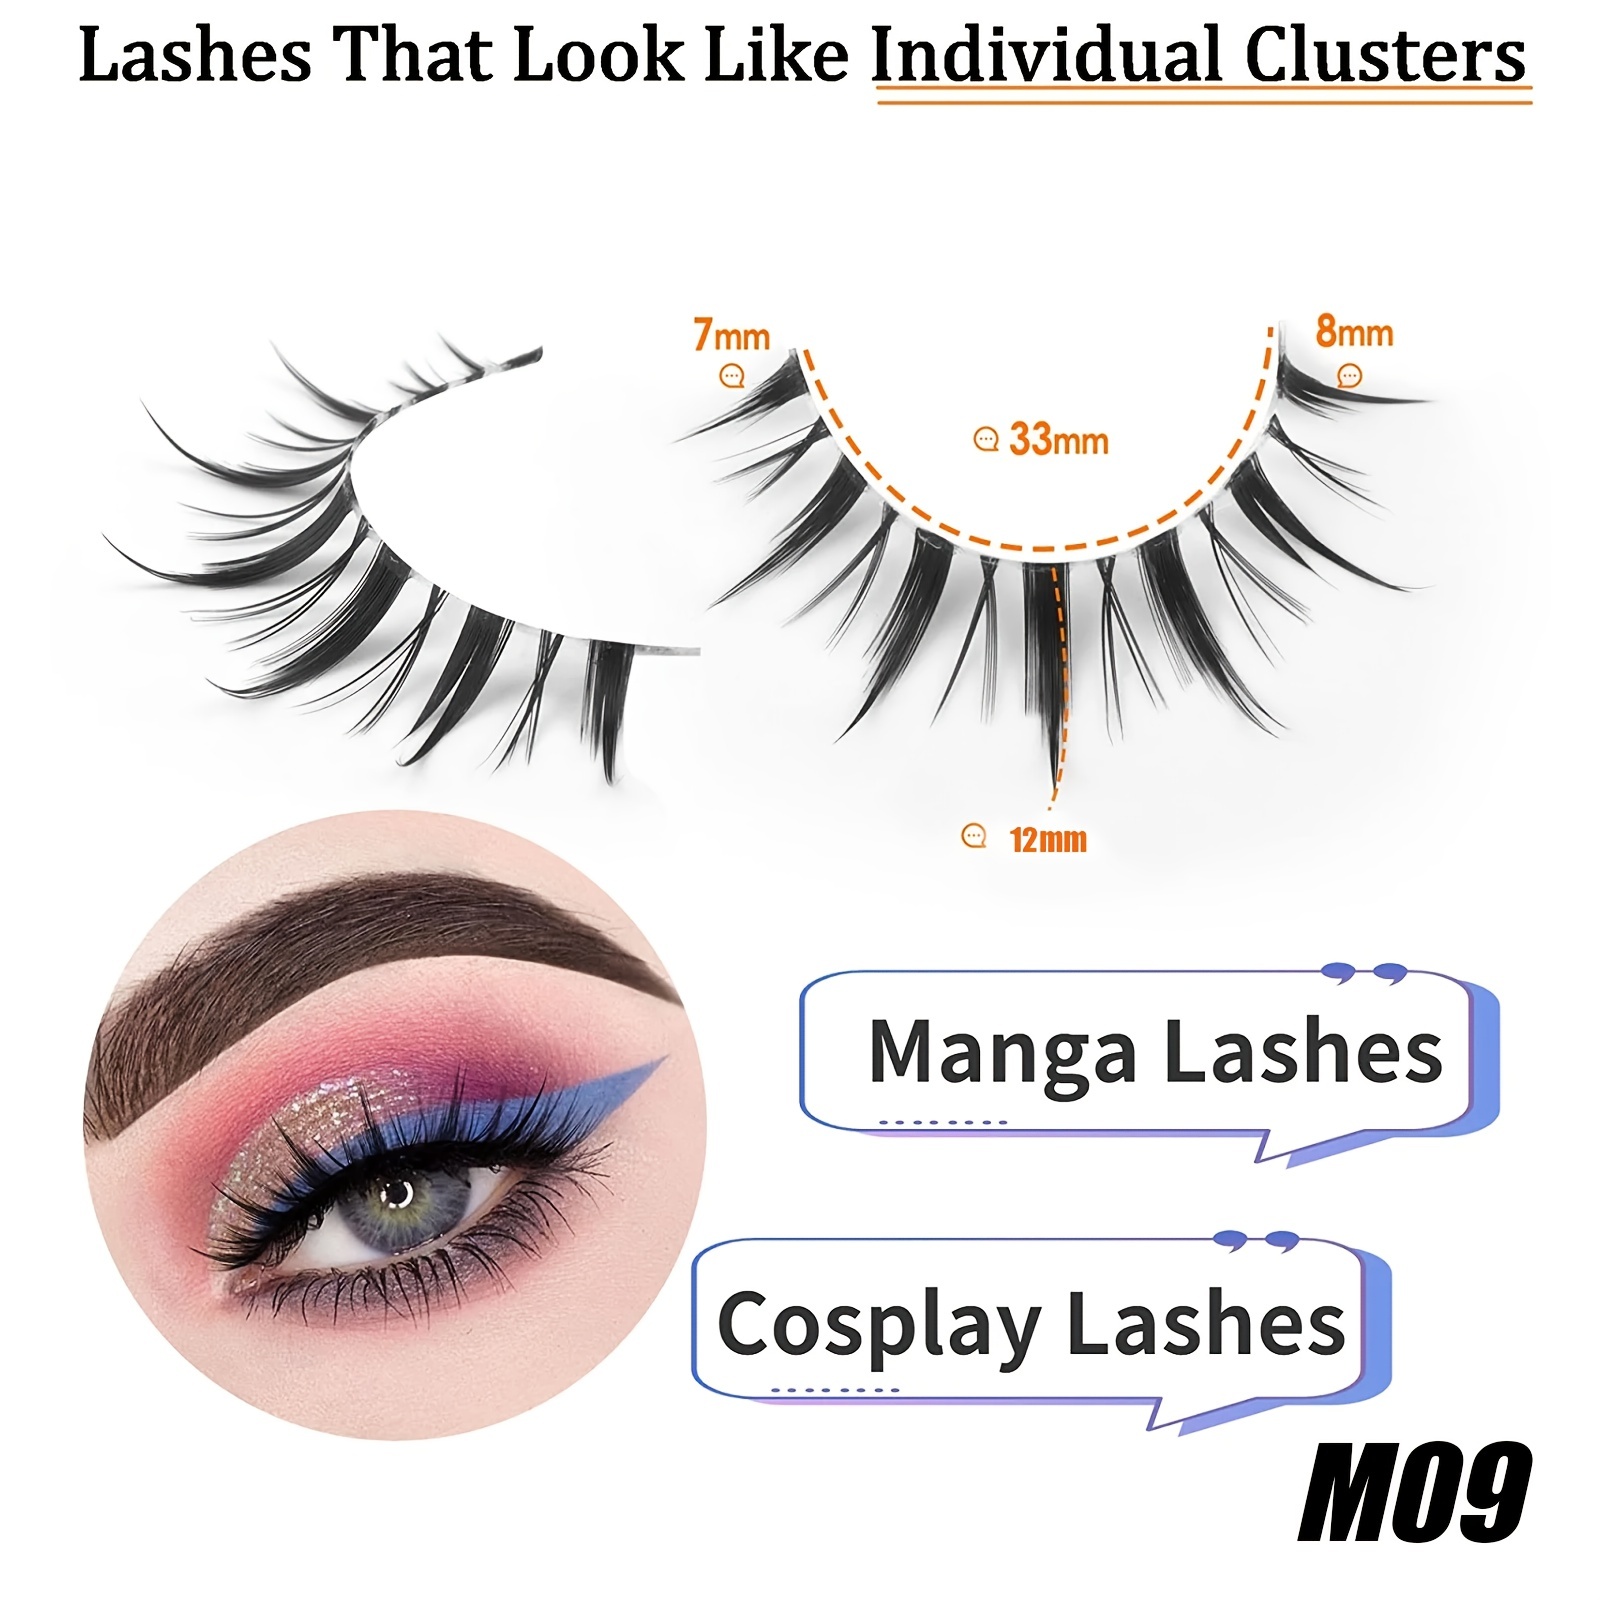 Manga Lashes, Clear Band Anime Lashes 4 Pack, Spiky Anime False Eyelashes  Natural Look, Japanese Lashes Looks Like Cluster Manga Lashes Individual,  Re